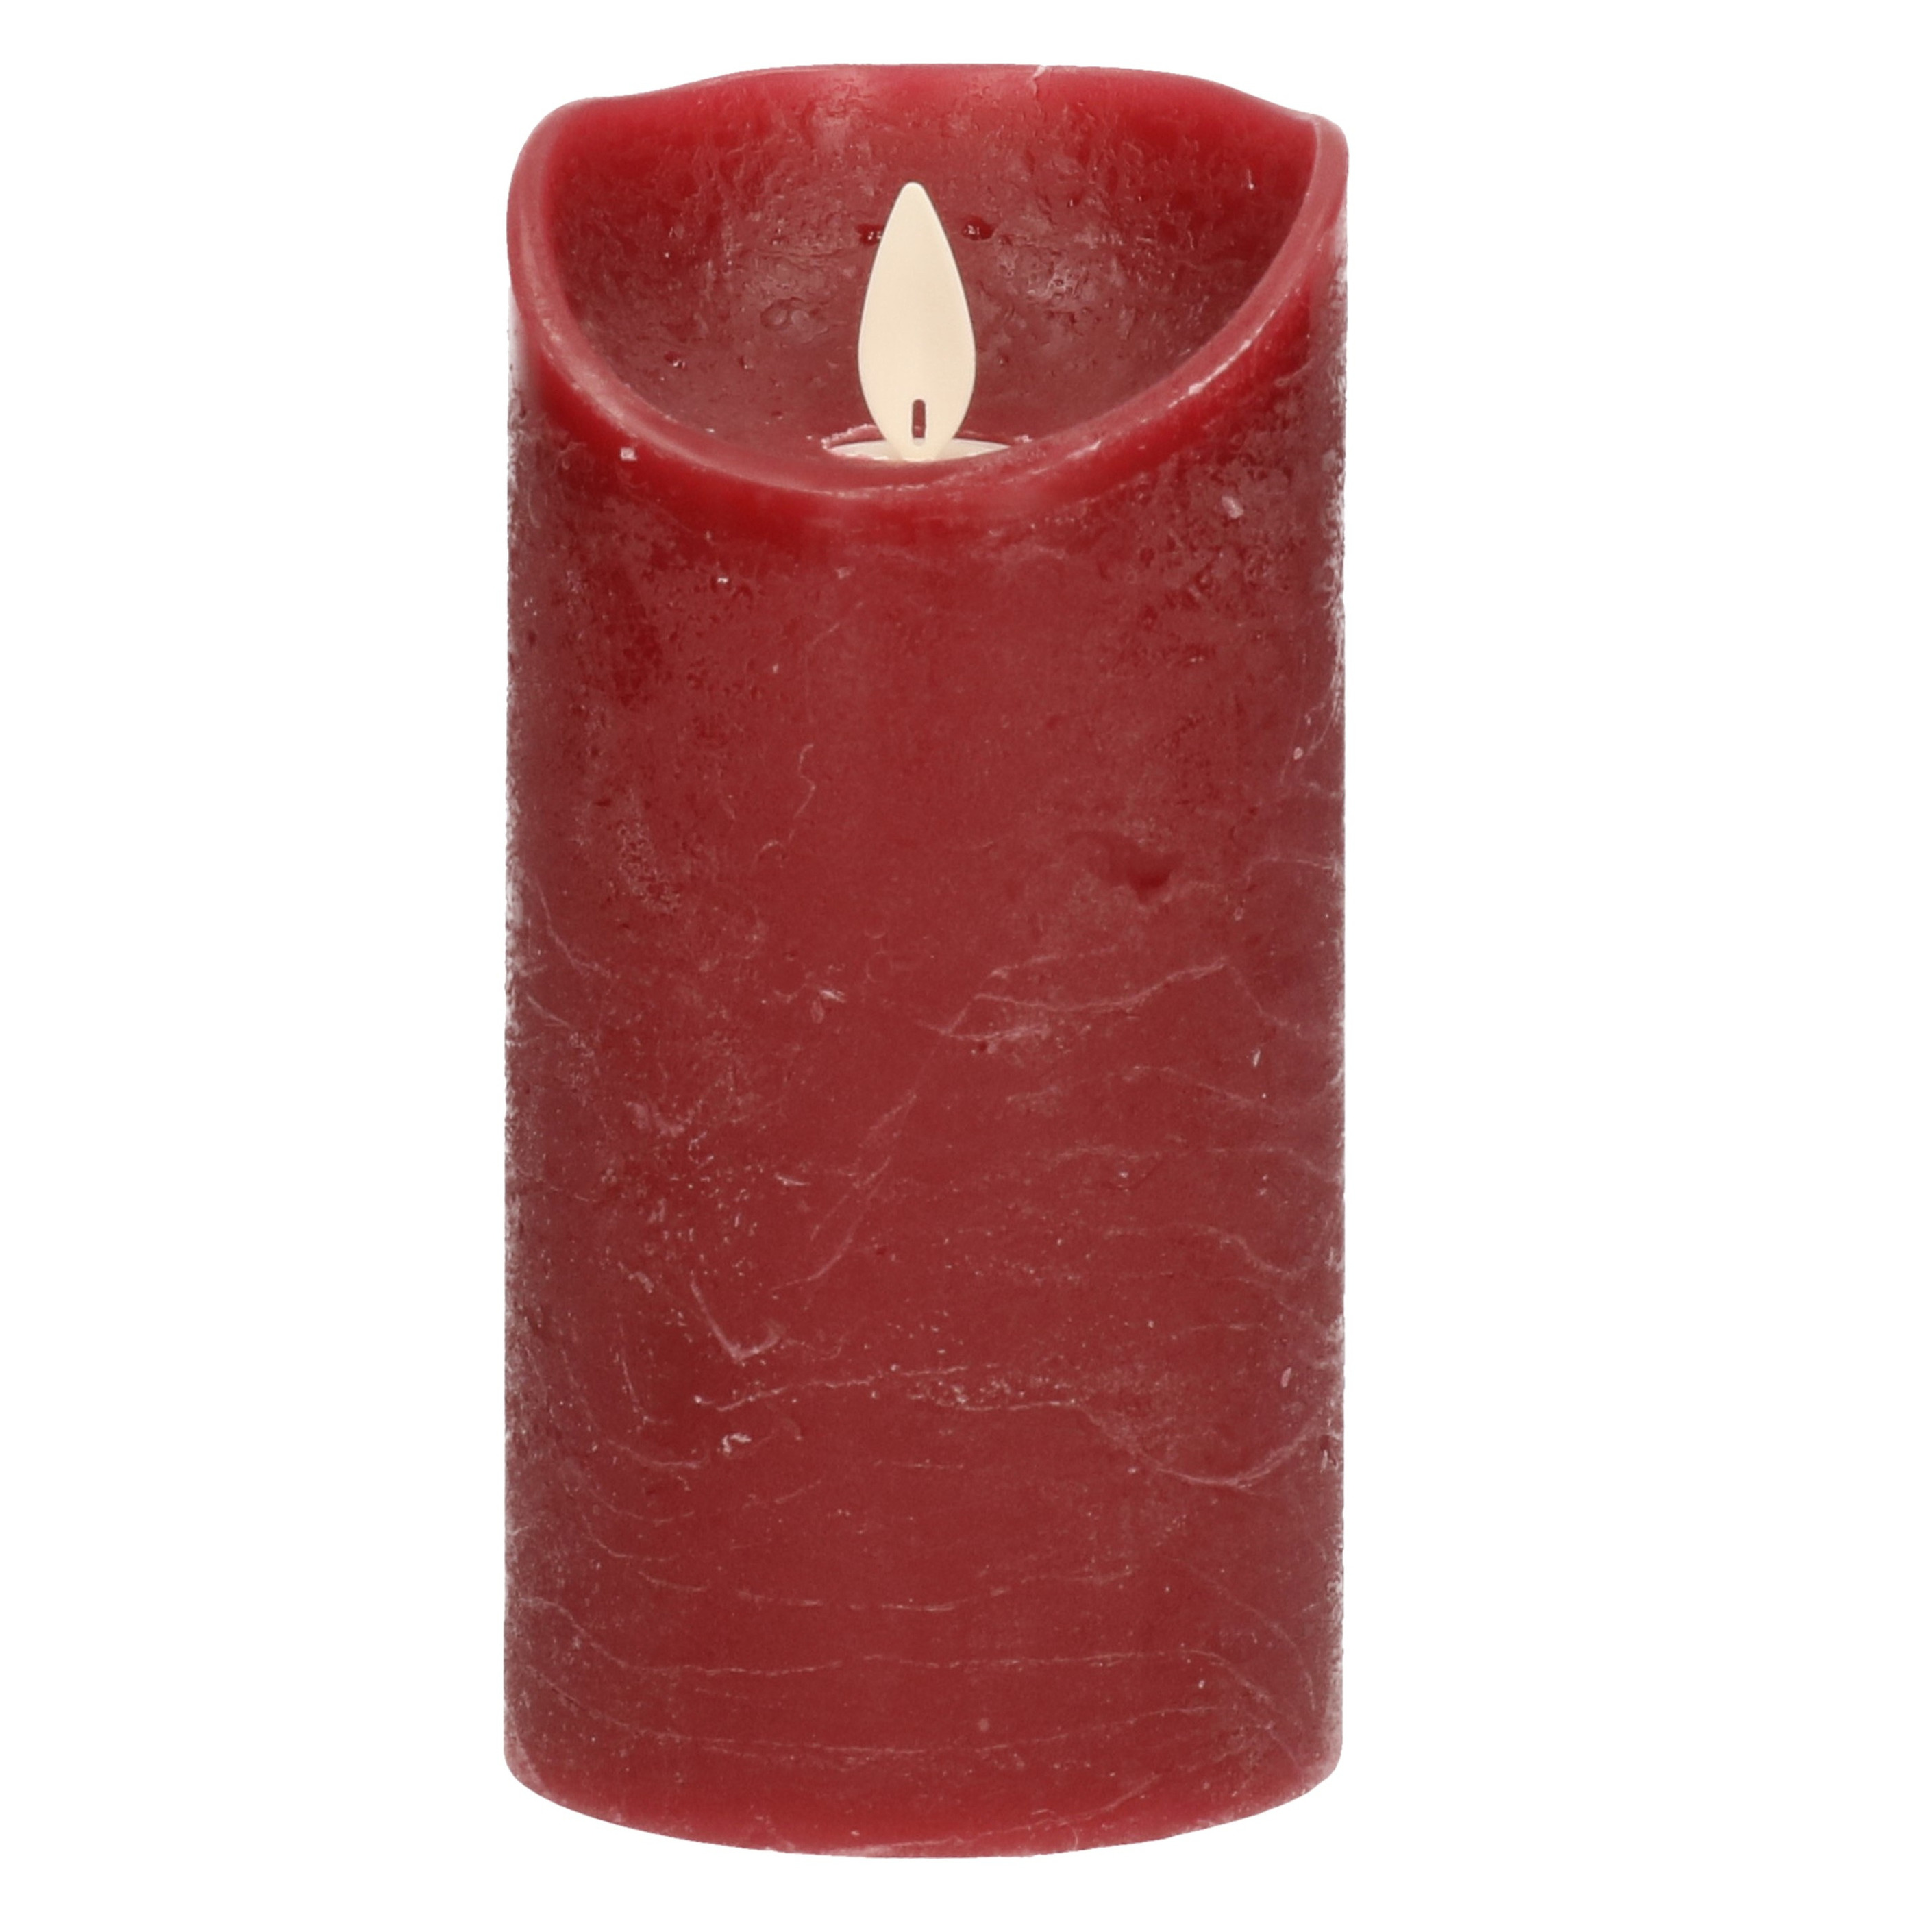 1x Bordeaux rode LED kaarsen - stompkaarsen met bewegende vlam 15 cm